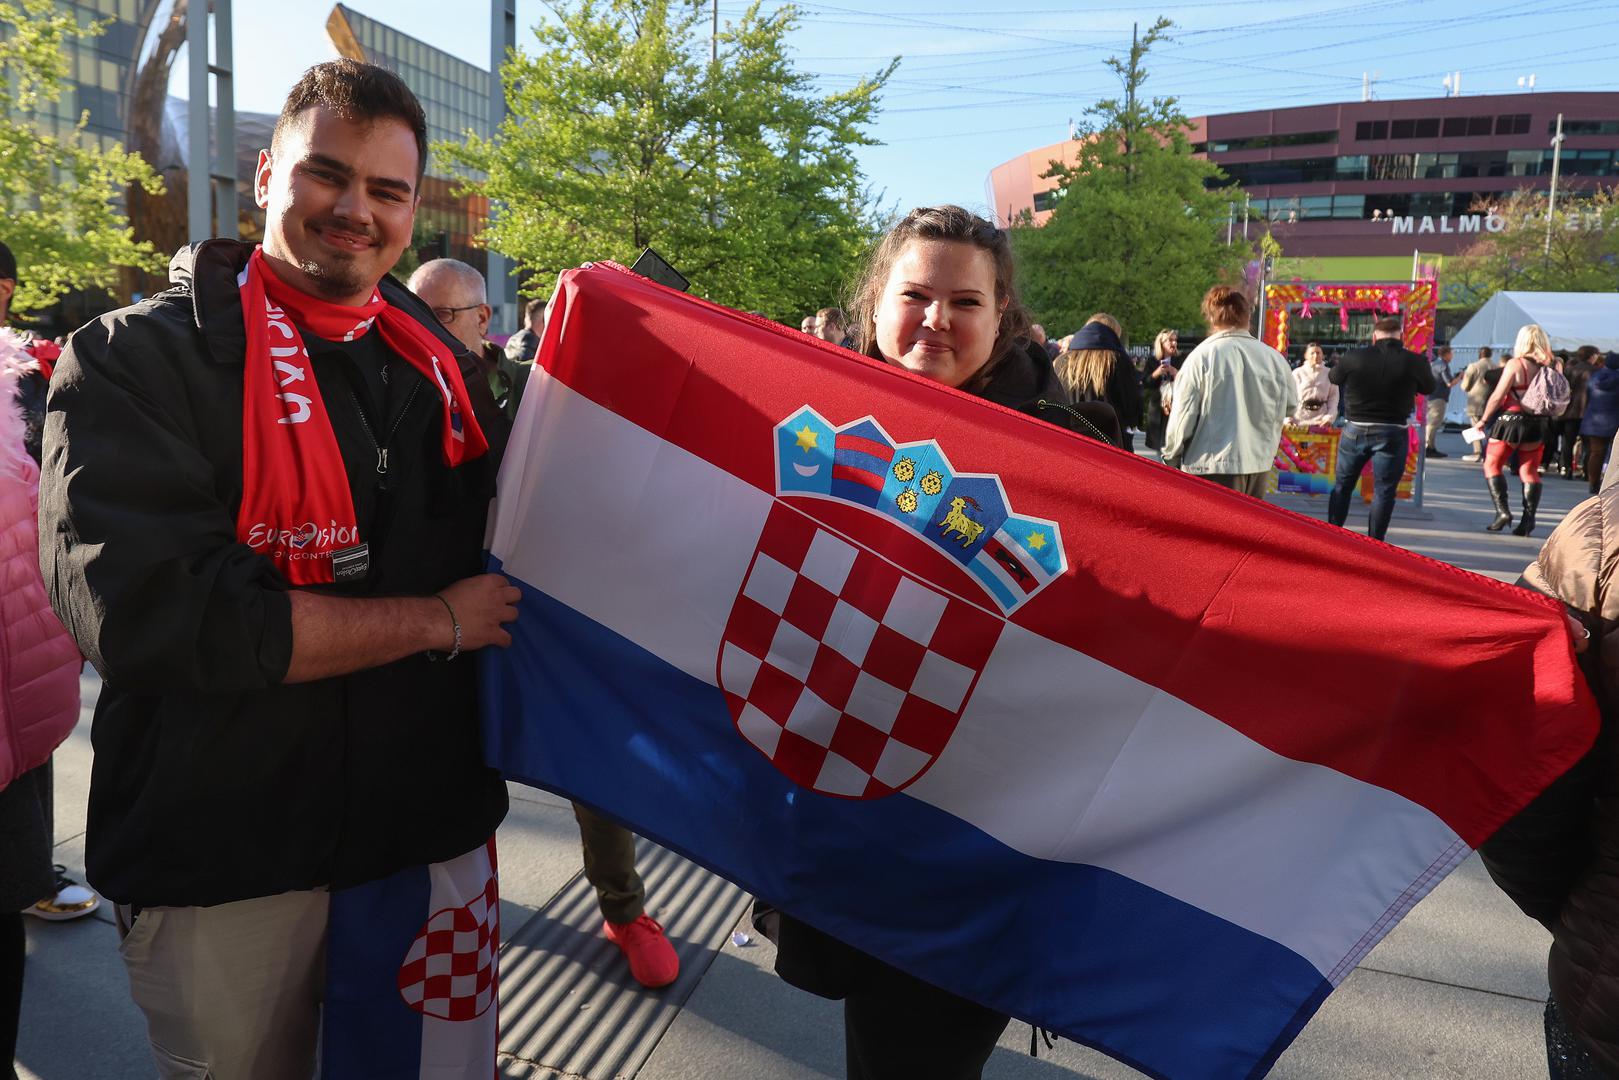  Sa zastavama su stigli bodriti Marka Purišića koji odlično stoji na eurovizijskim kladionicama. 